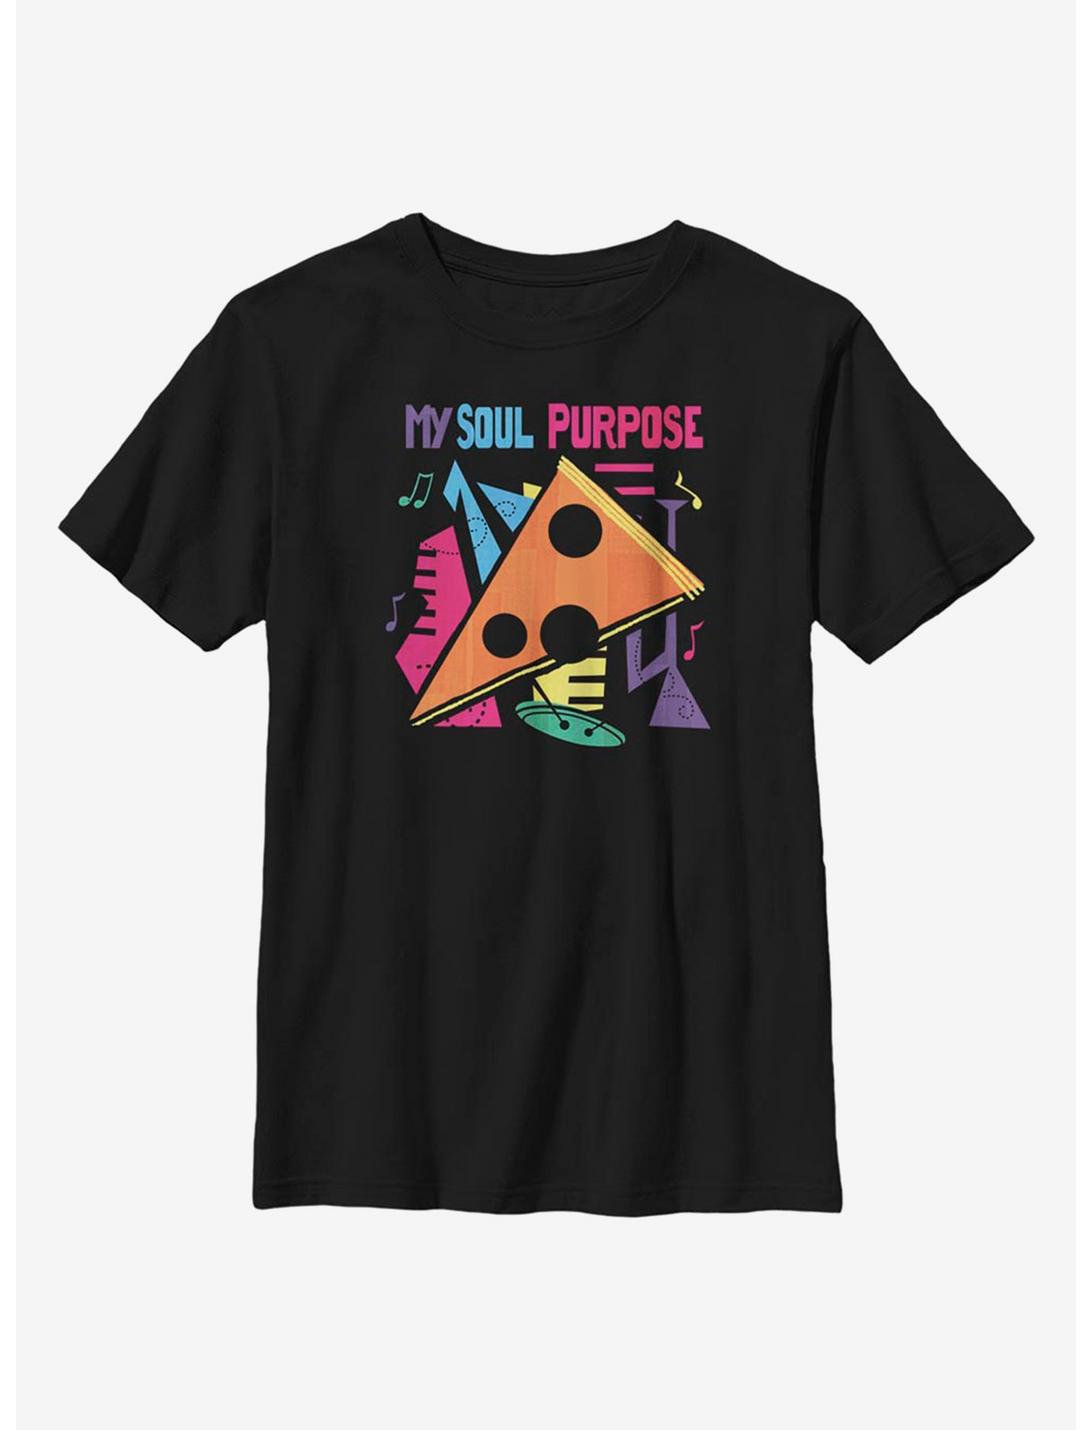 Disney Pixar Soul My Purpose Youth T-Shirt, BLACK, hi-res